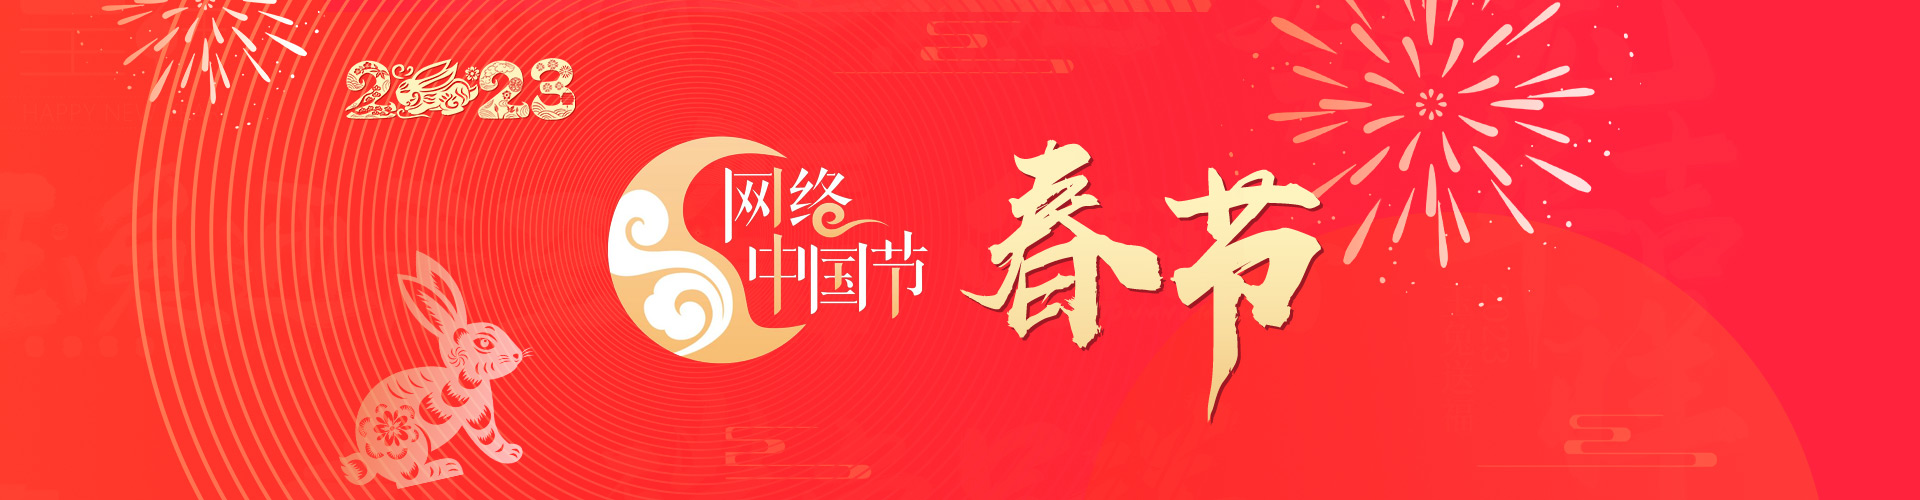 网络中国节-春节